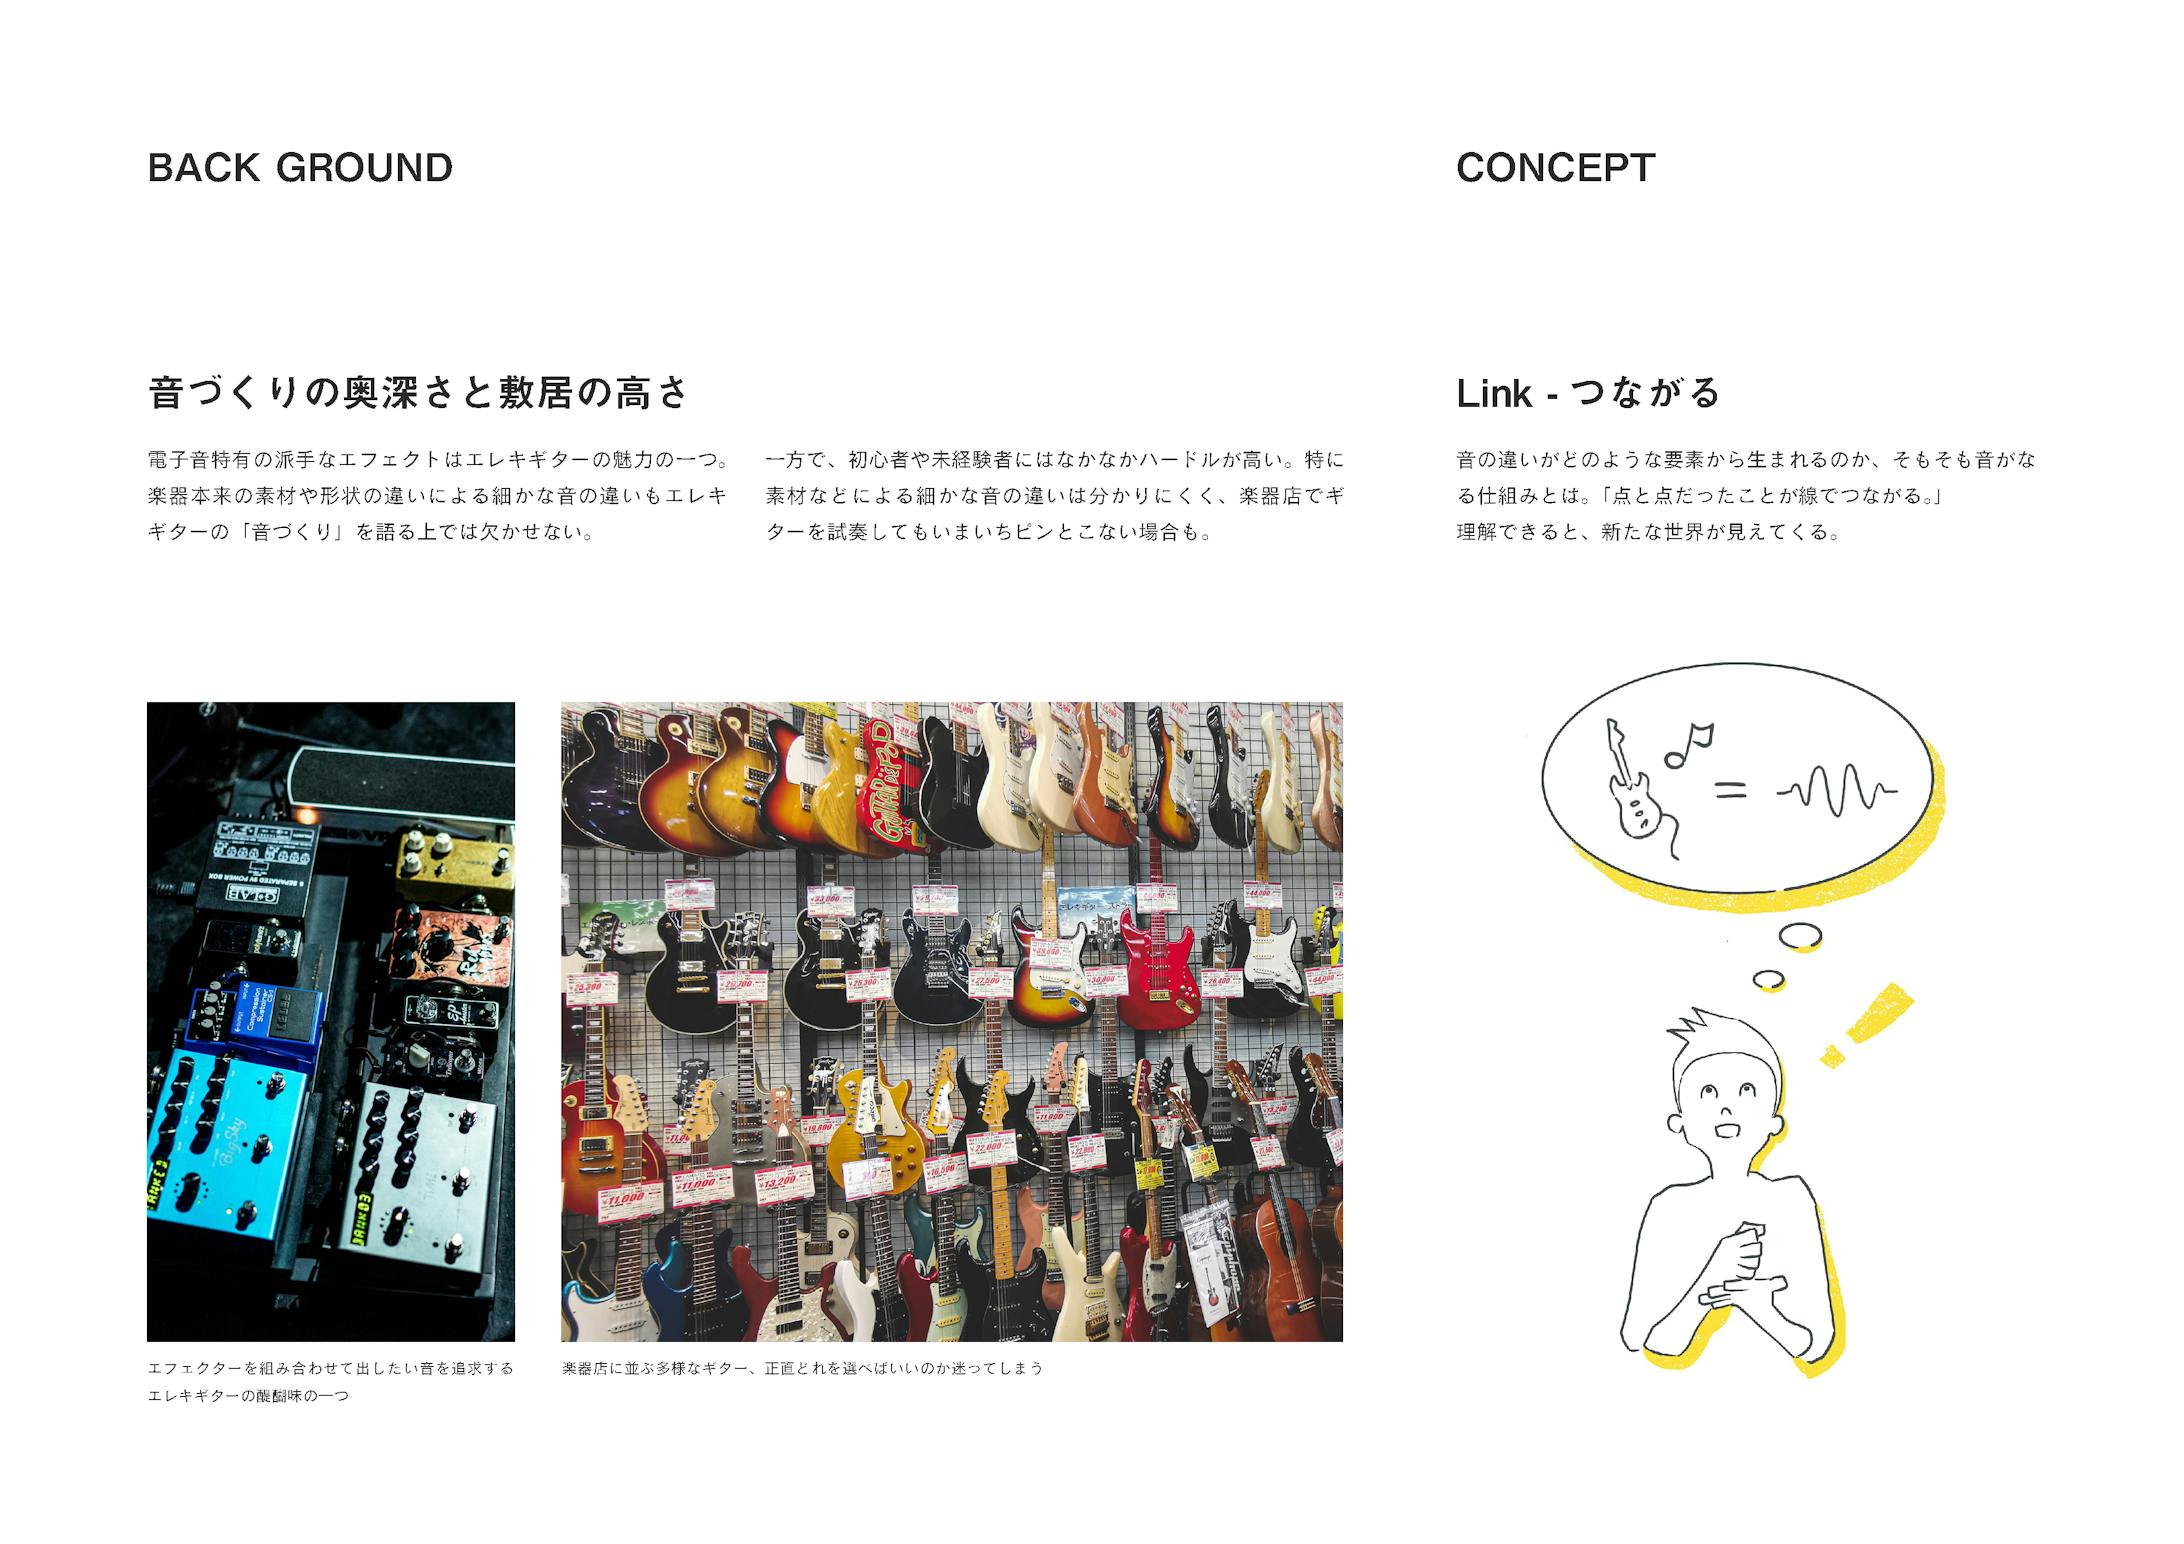 エレキギターの体験型展示施設『E.Guitar.Link』-2